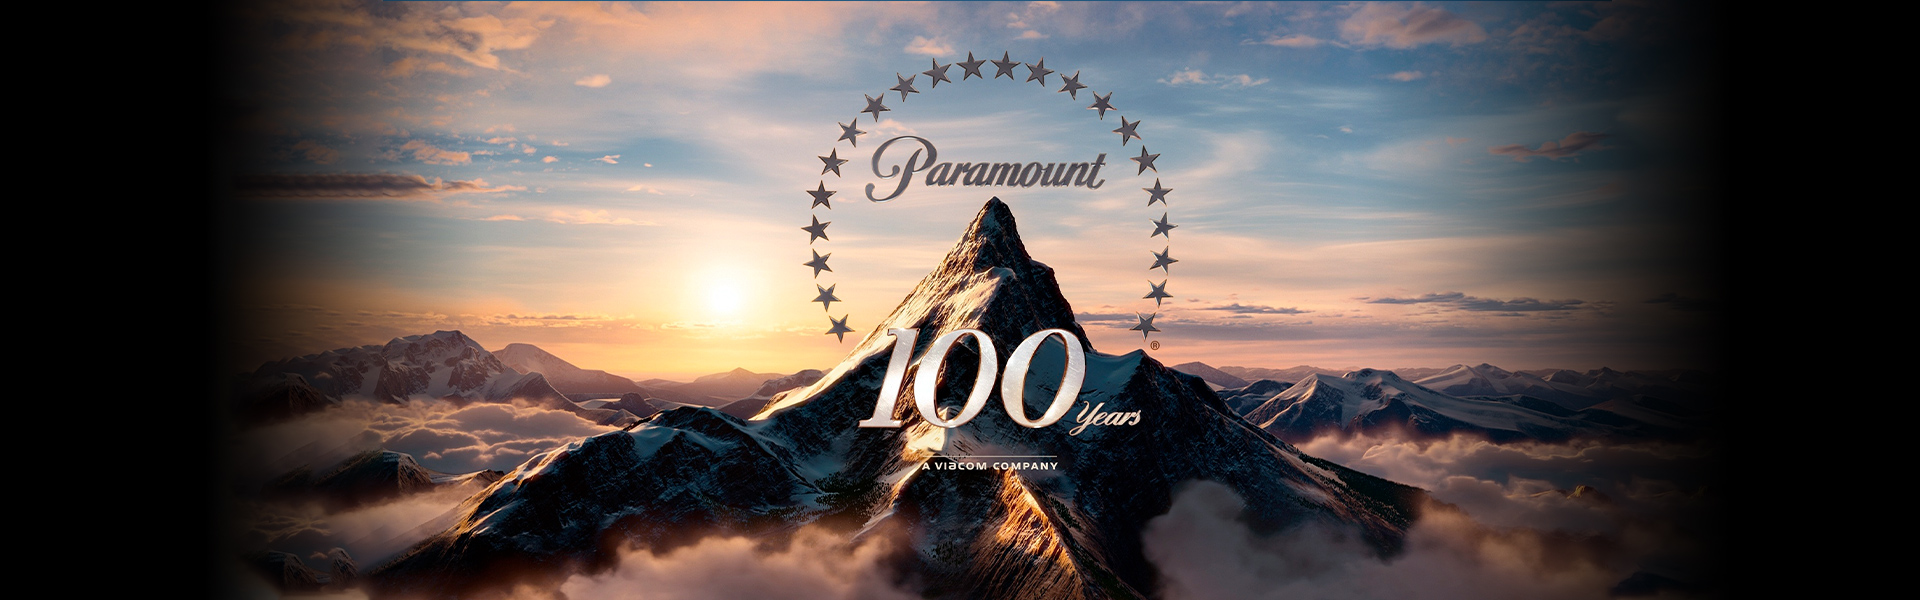 Paramount Pictures Brasil